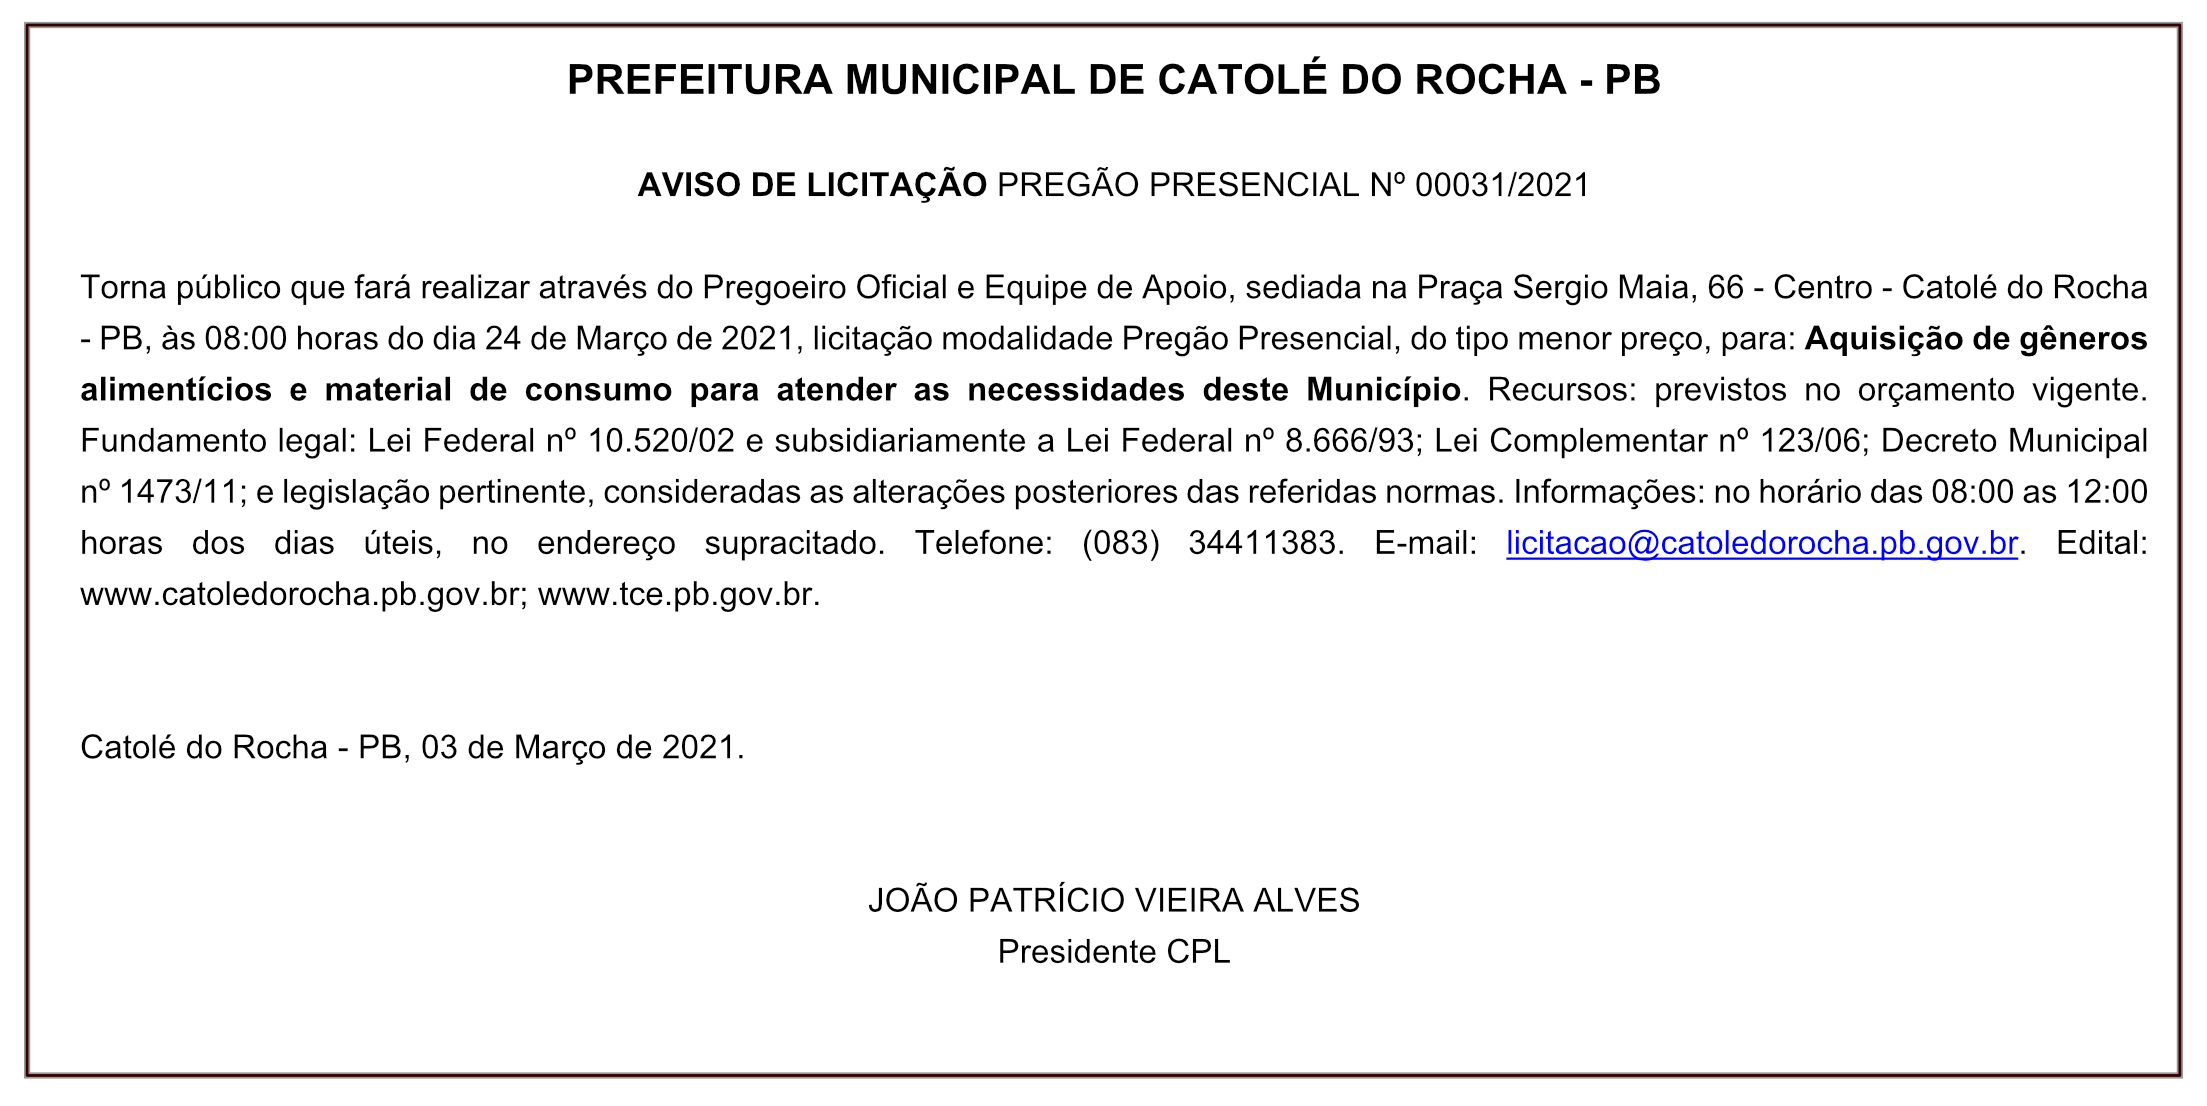 PREFEITURA MUNICIPAL DE CATOLÉ DO ROCHA – AVISO DE LICITAÇÃO – PREGÃO PRESENCIAL Nº 00031/2021